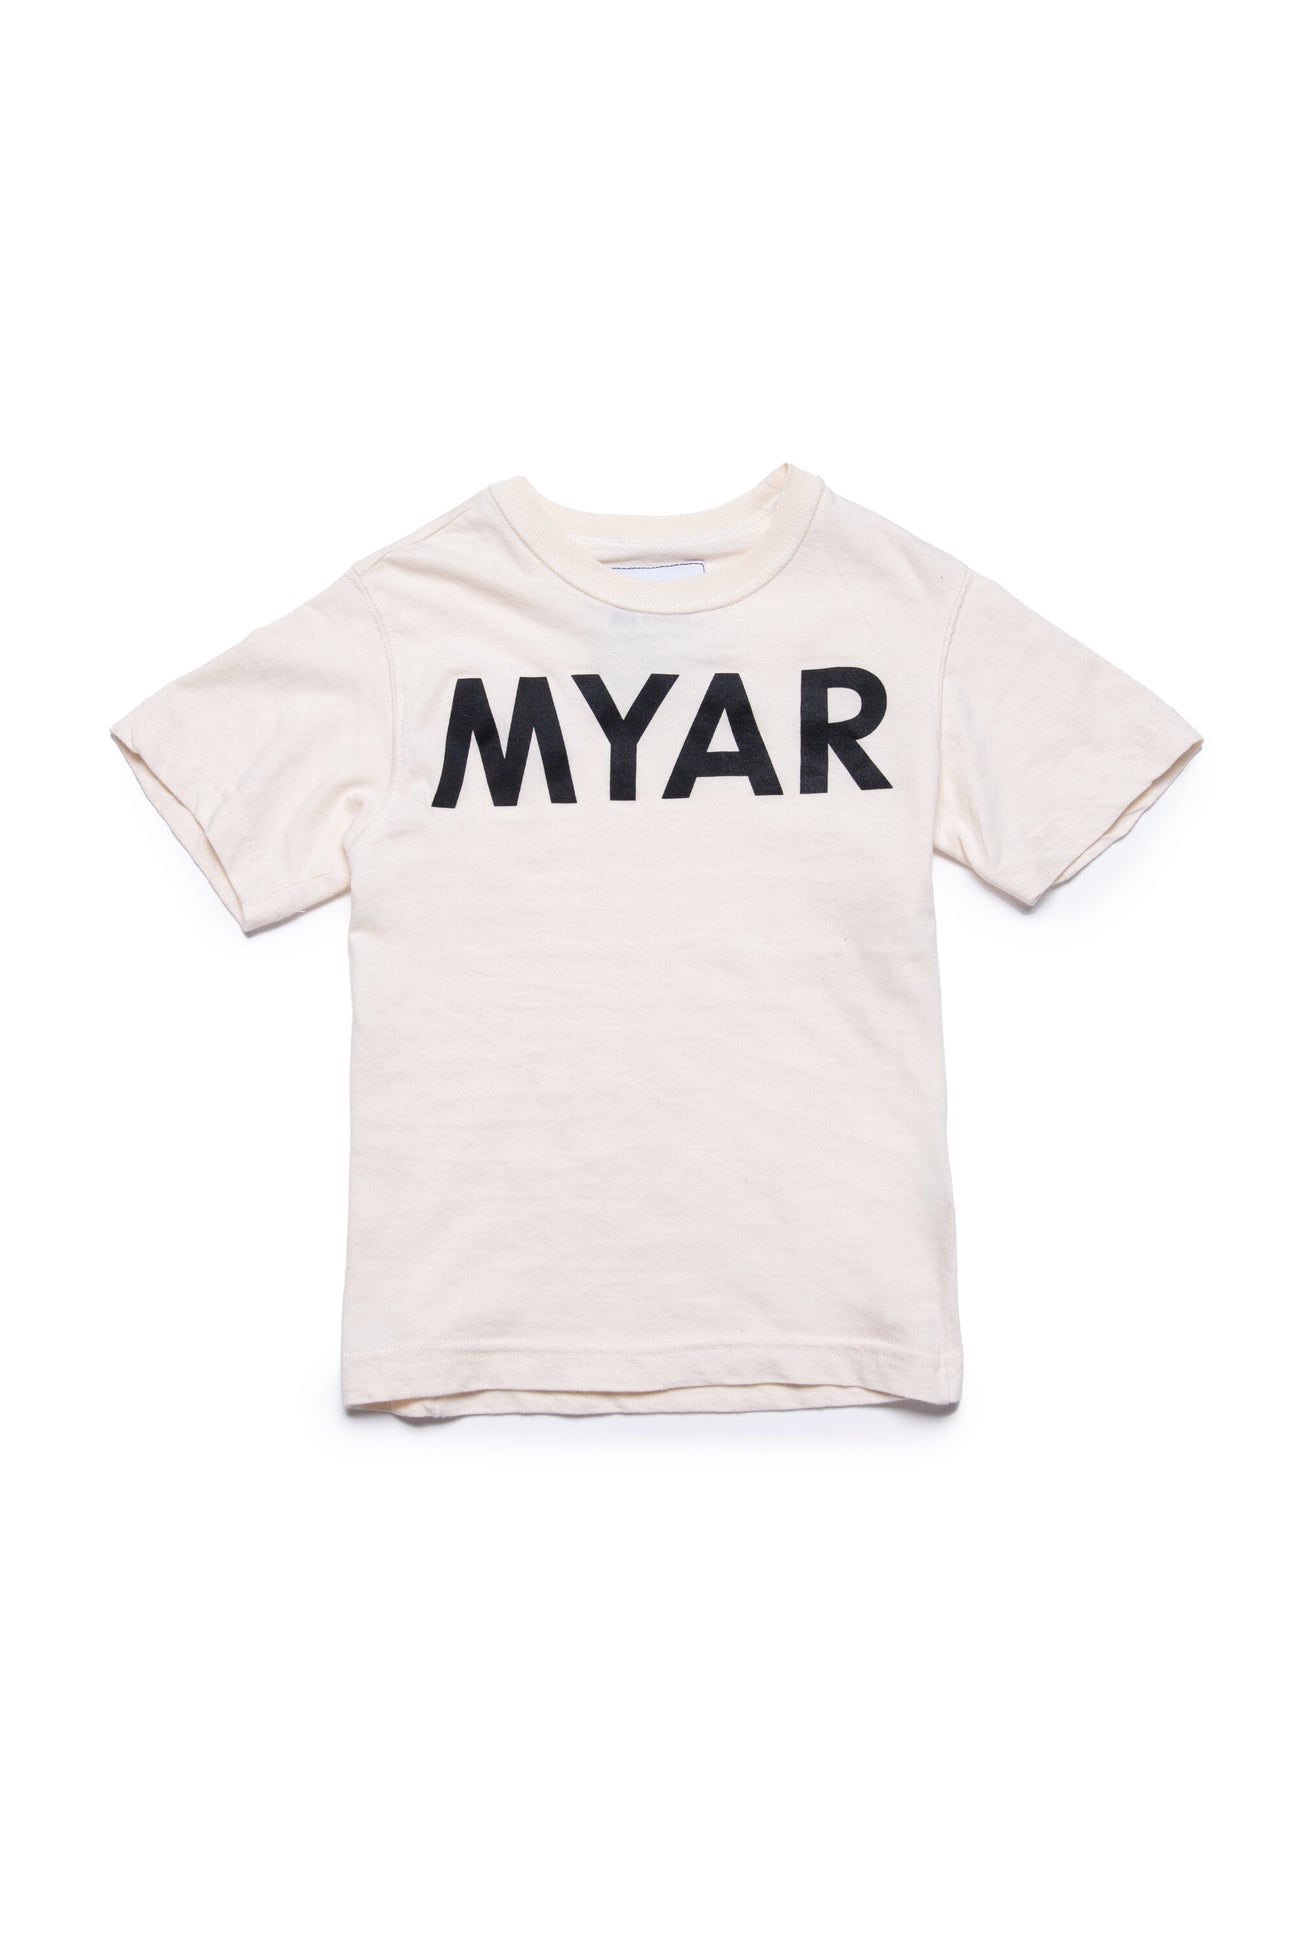 Camiseta en algodón deadstock con logotipo MYAR 